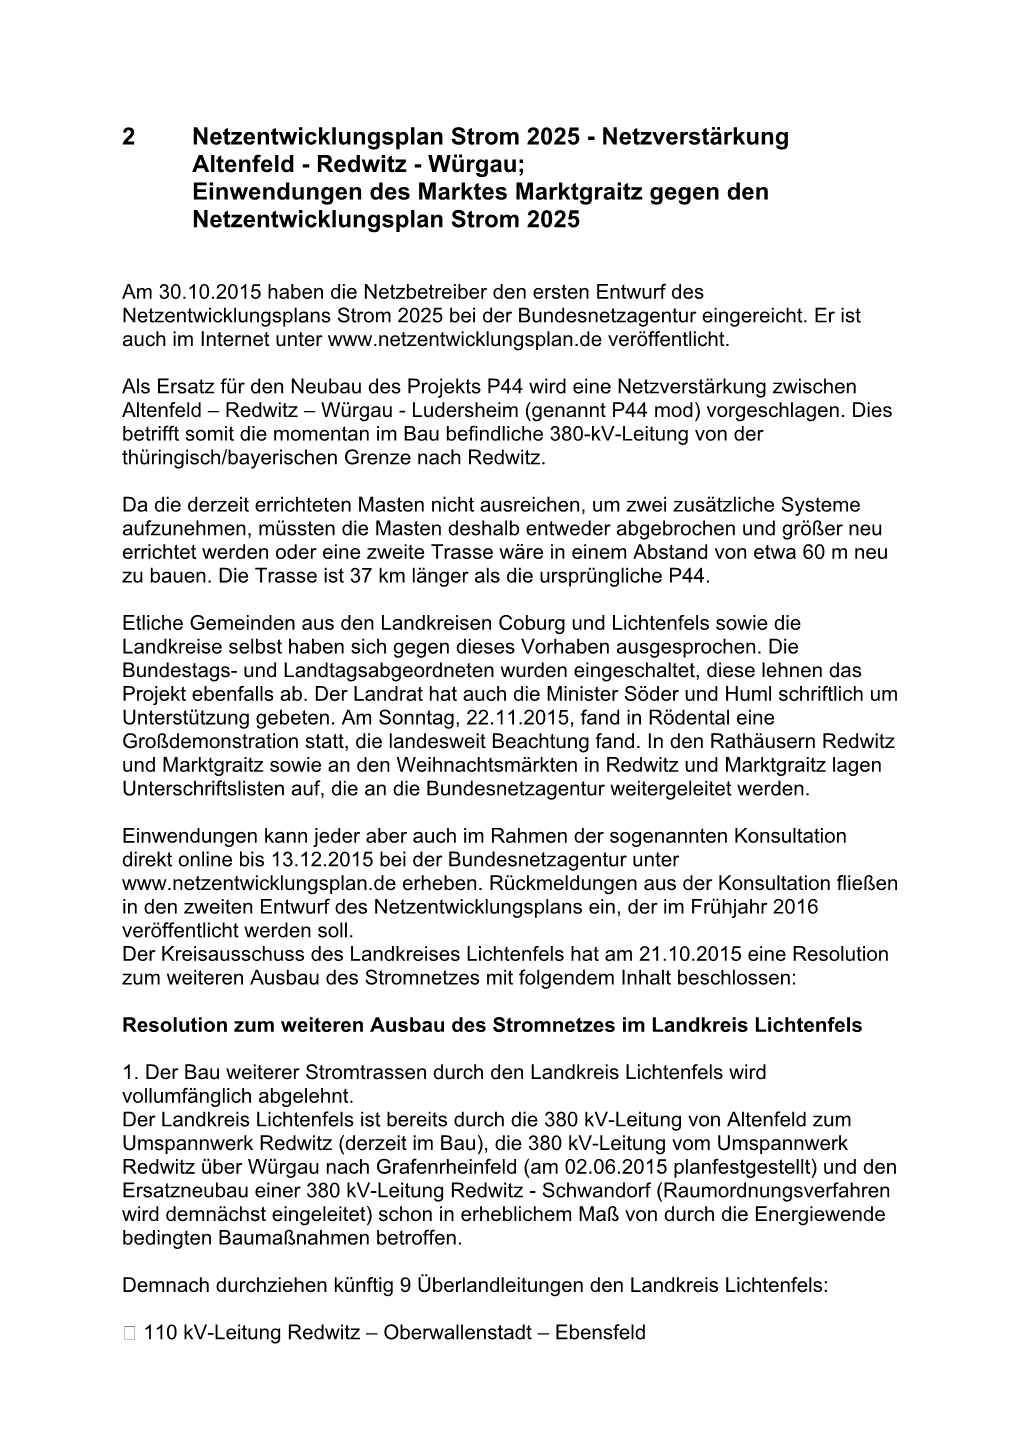 2 Netzentwicklungsplan Strom 2025 - Netzverstärkung Altenfeld - Redwitz - Würgau; Einwendungen Des Marktes Marktgraitz Gegen Den Netzentwicklungsplan Strom 2025